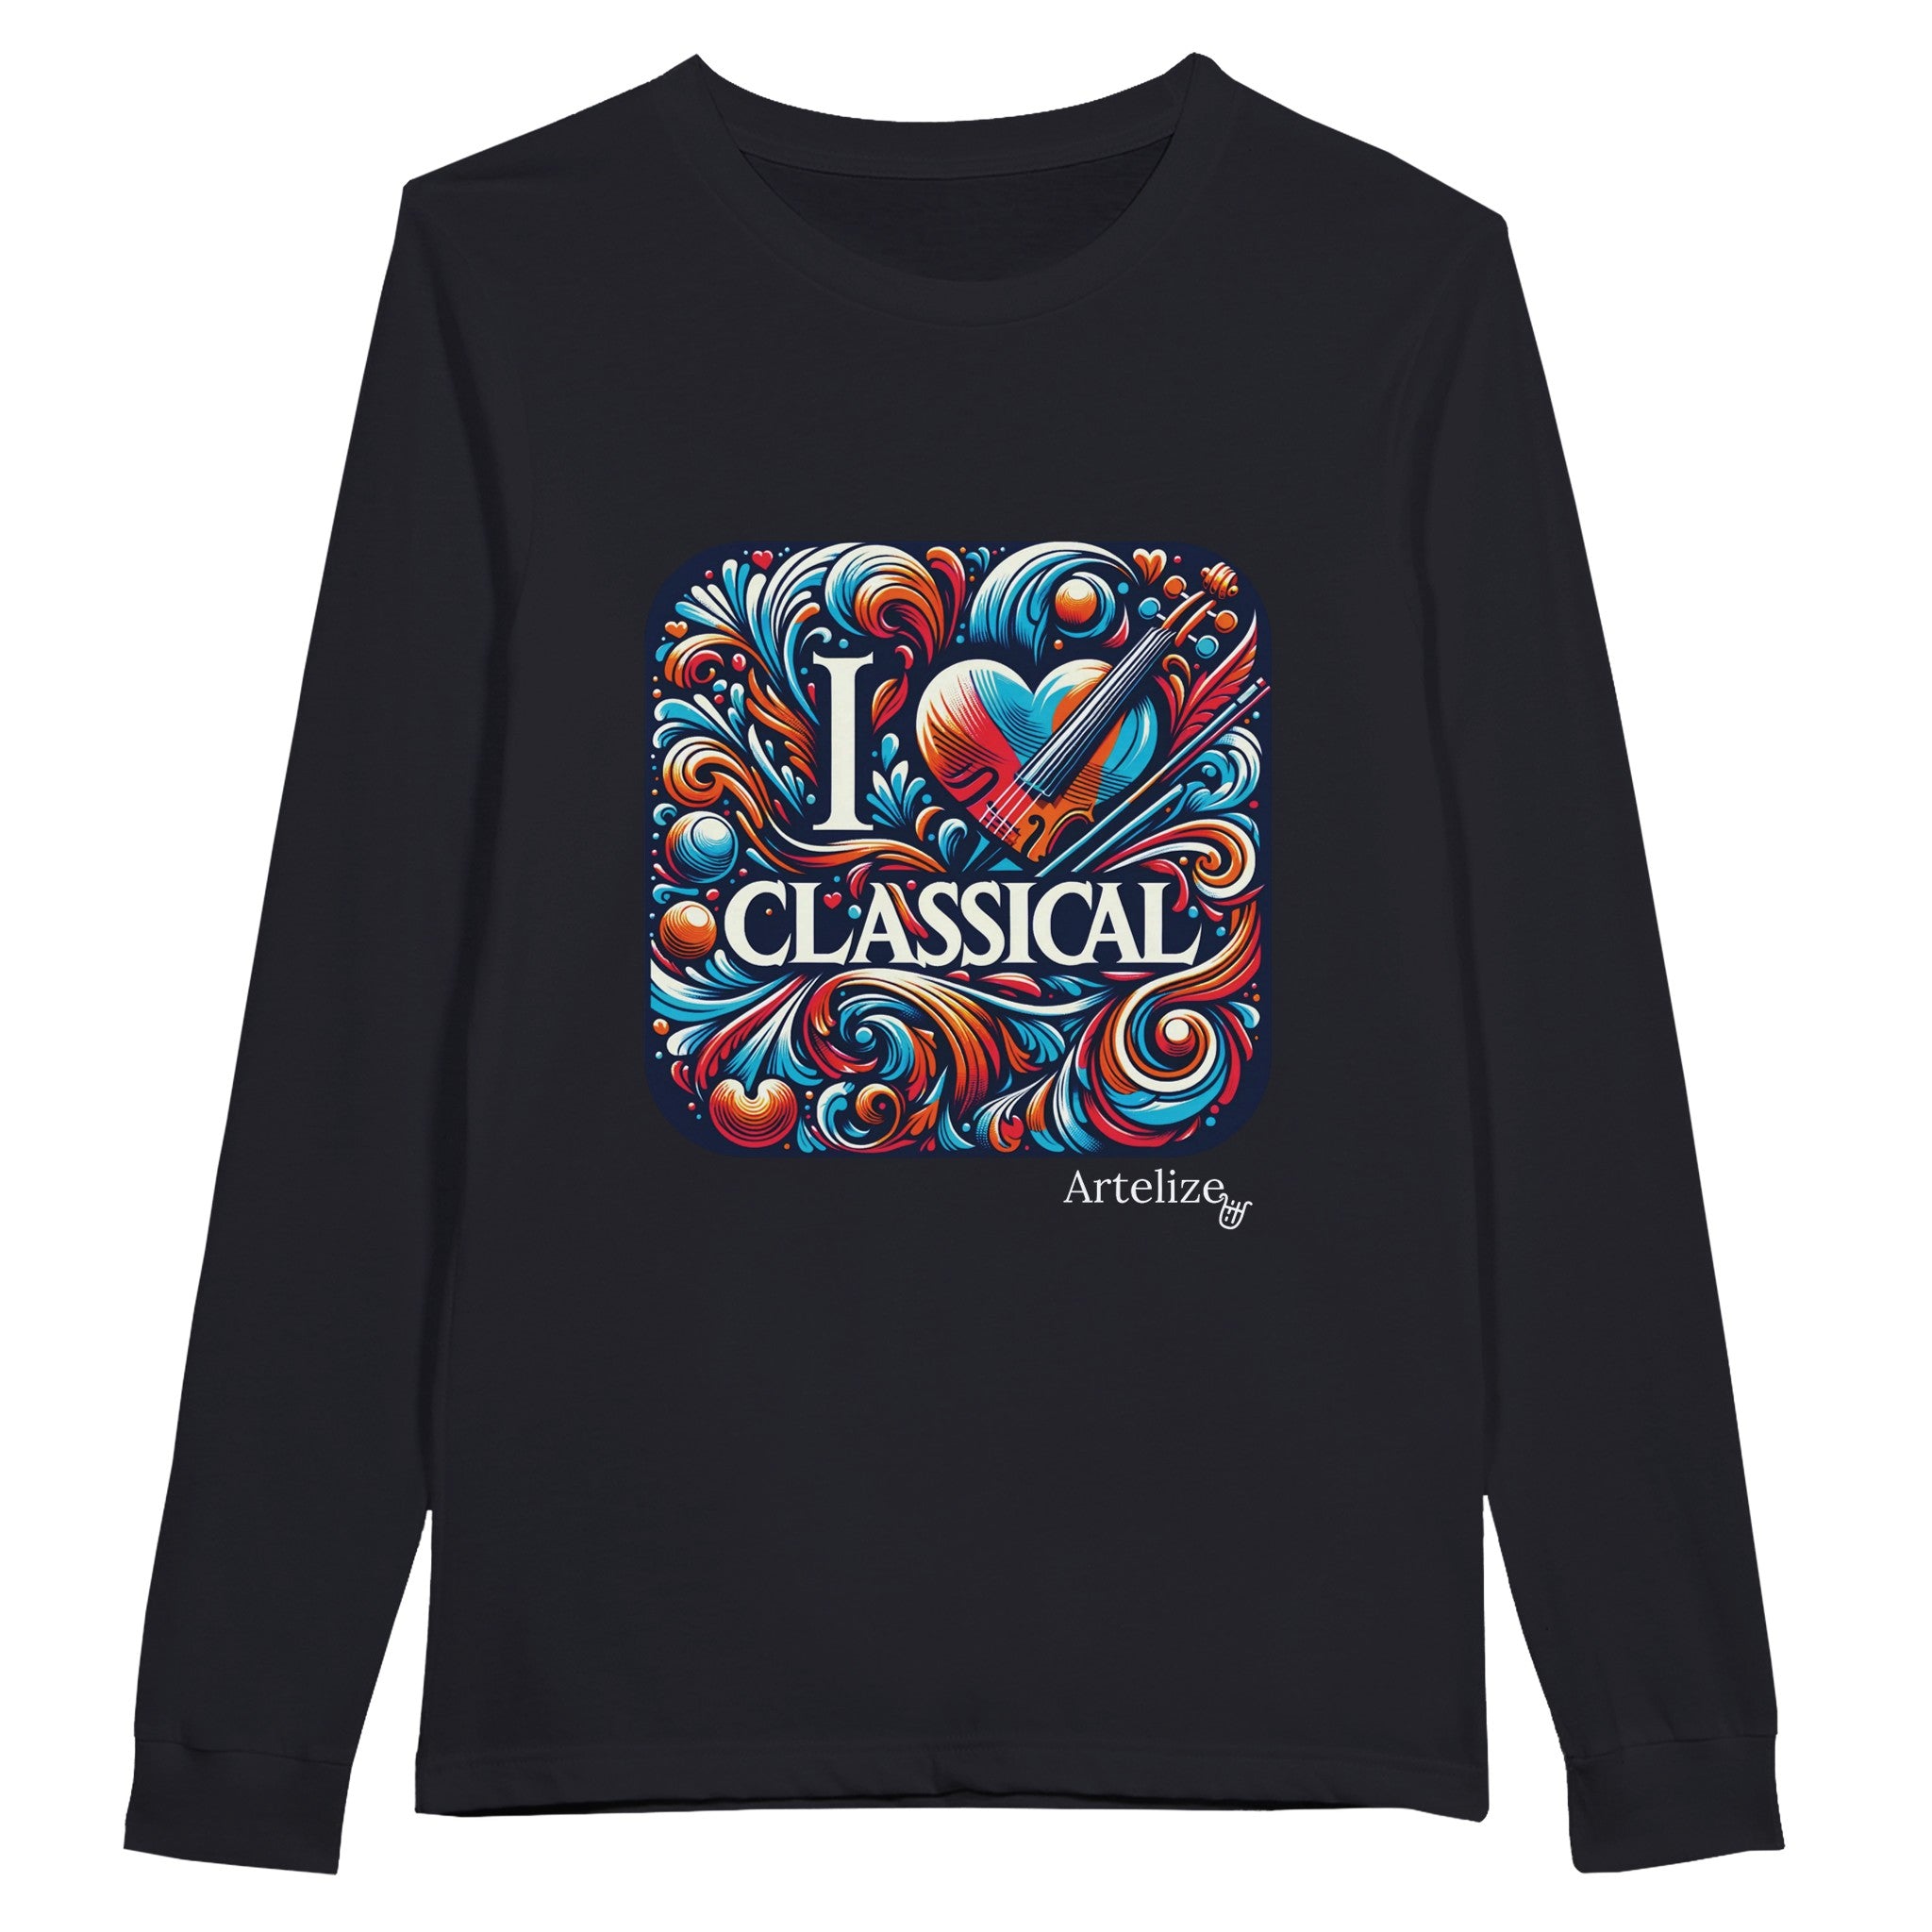 "I LOVE CLASSICAL" Premium Unisex Longsleeve T-shirt